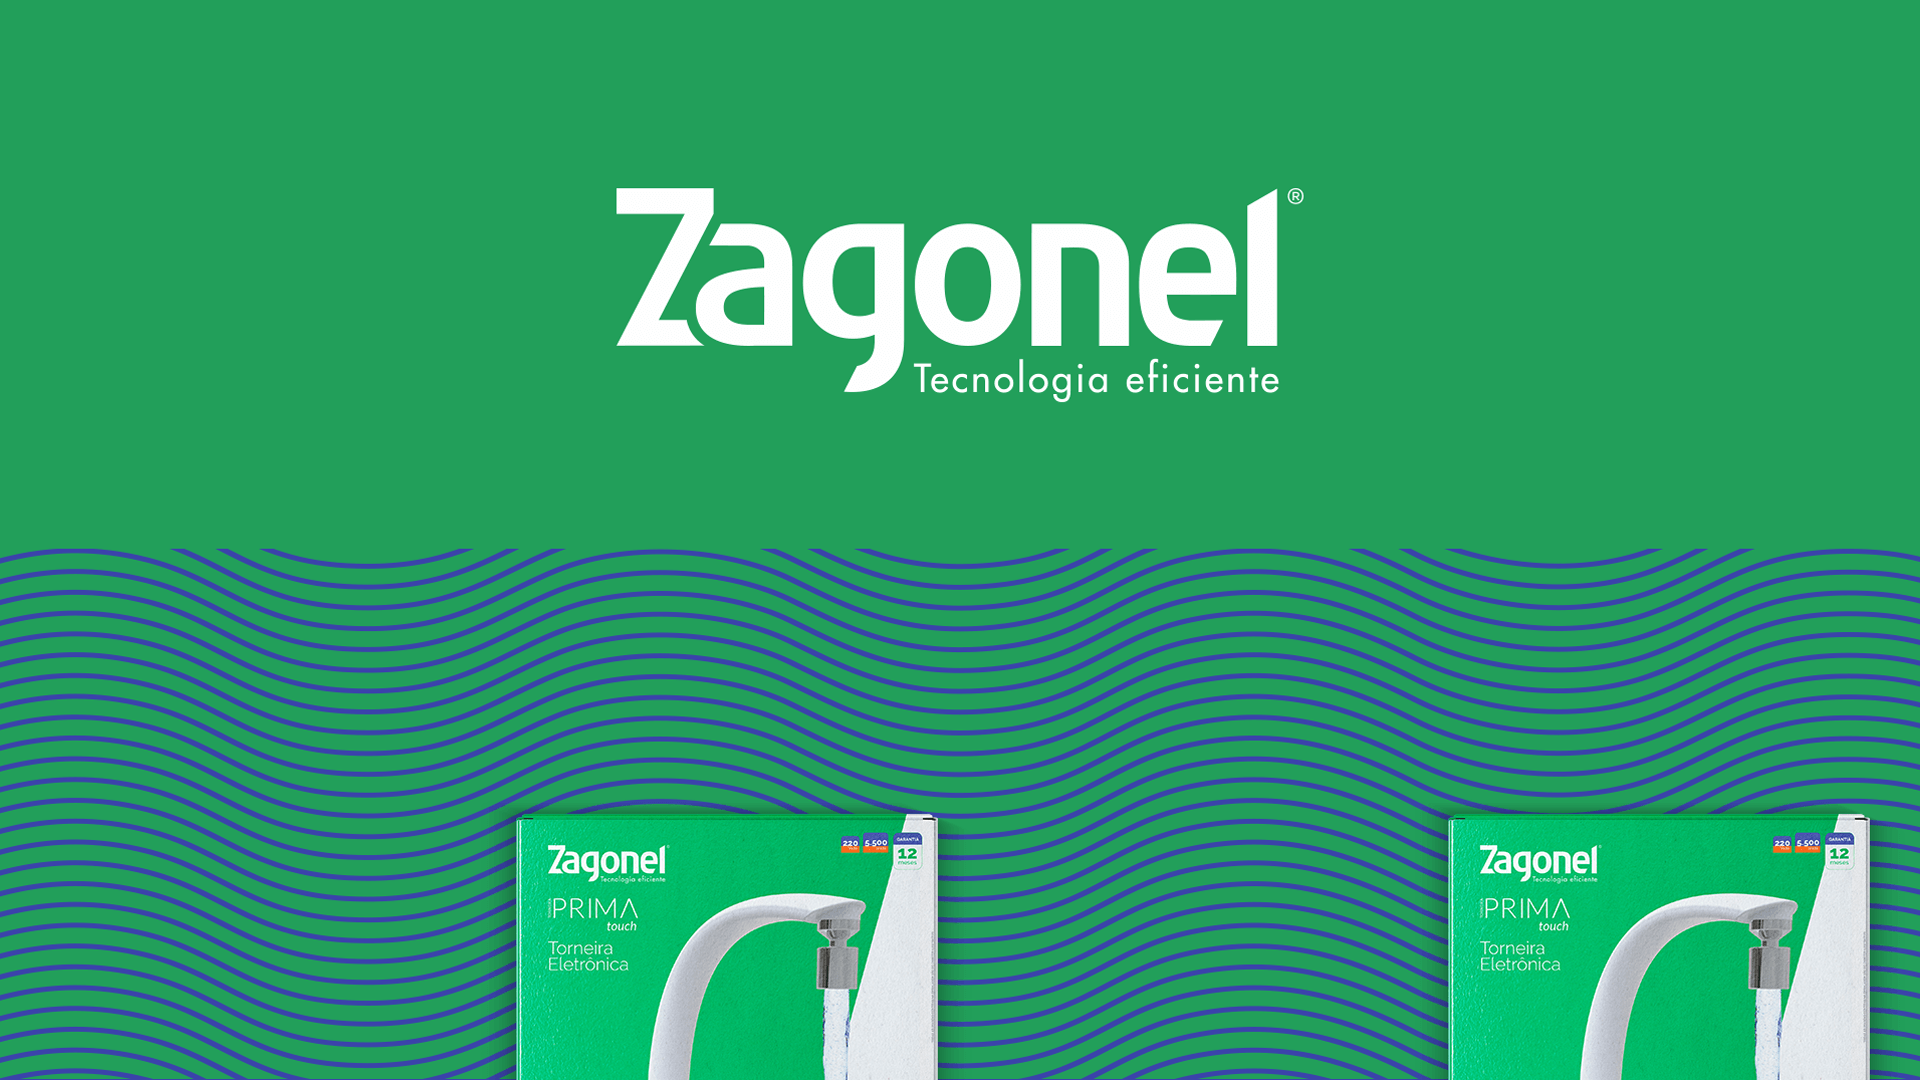 A Zagonel começou em 1989, pioneira quando lançou a ducha eletrônica com regulagem à distância do mercado.